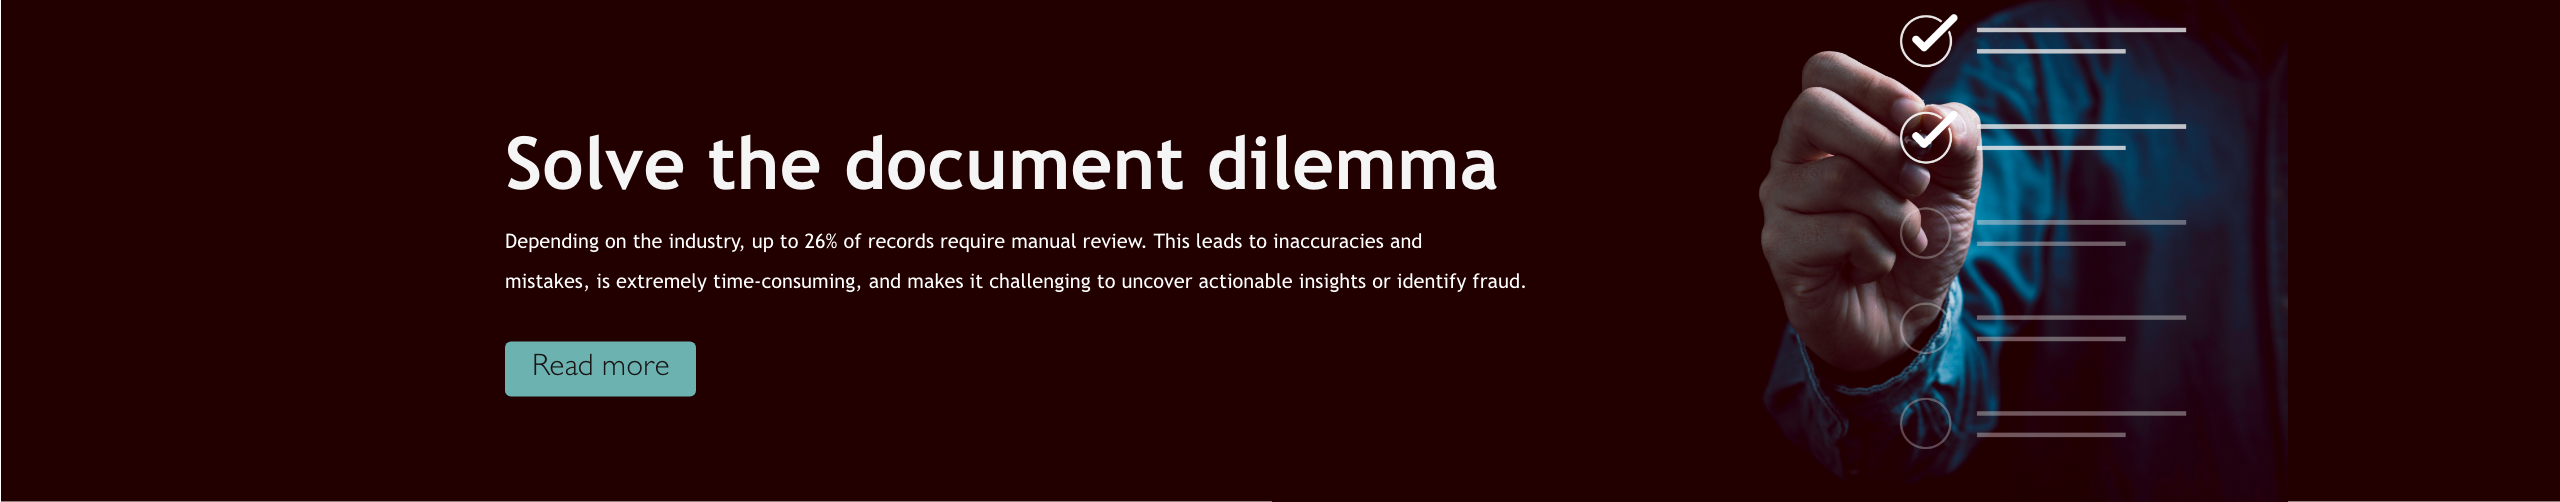 Solve the document dilemma